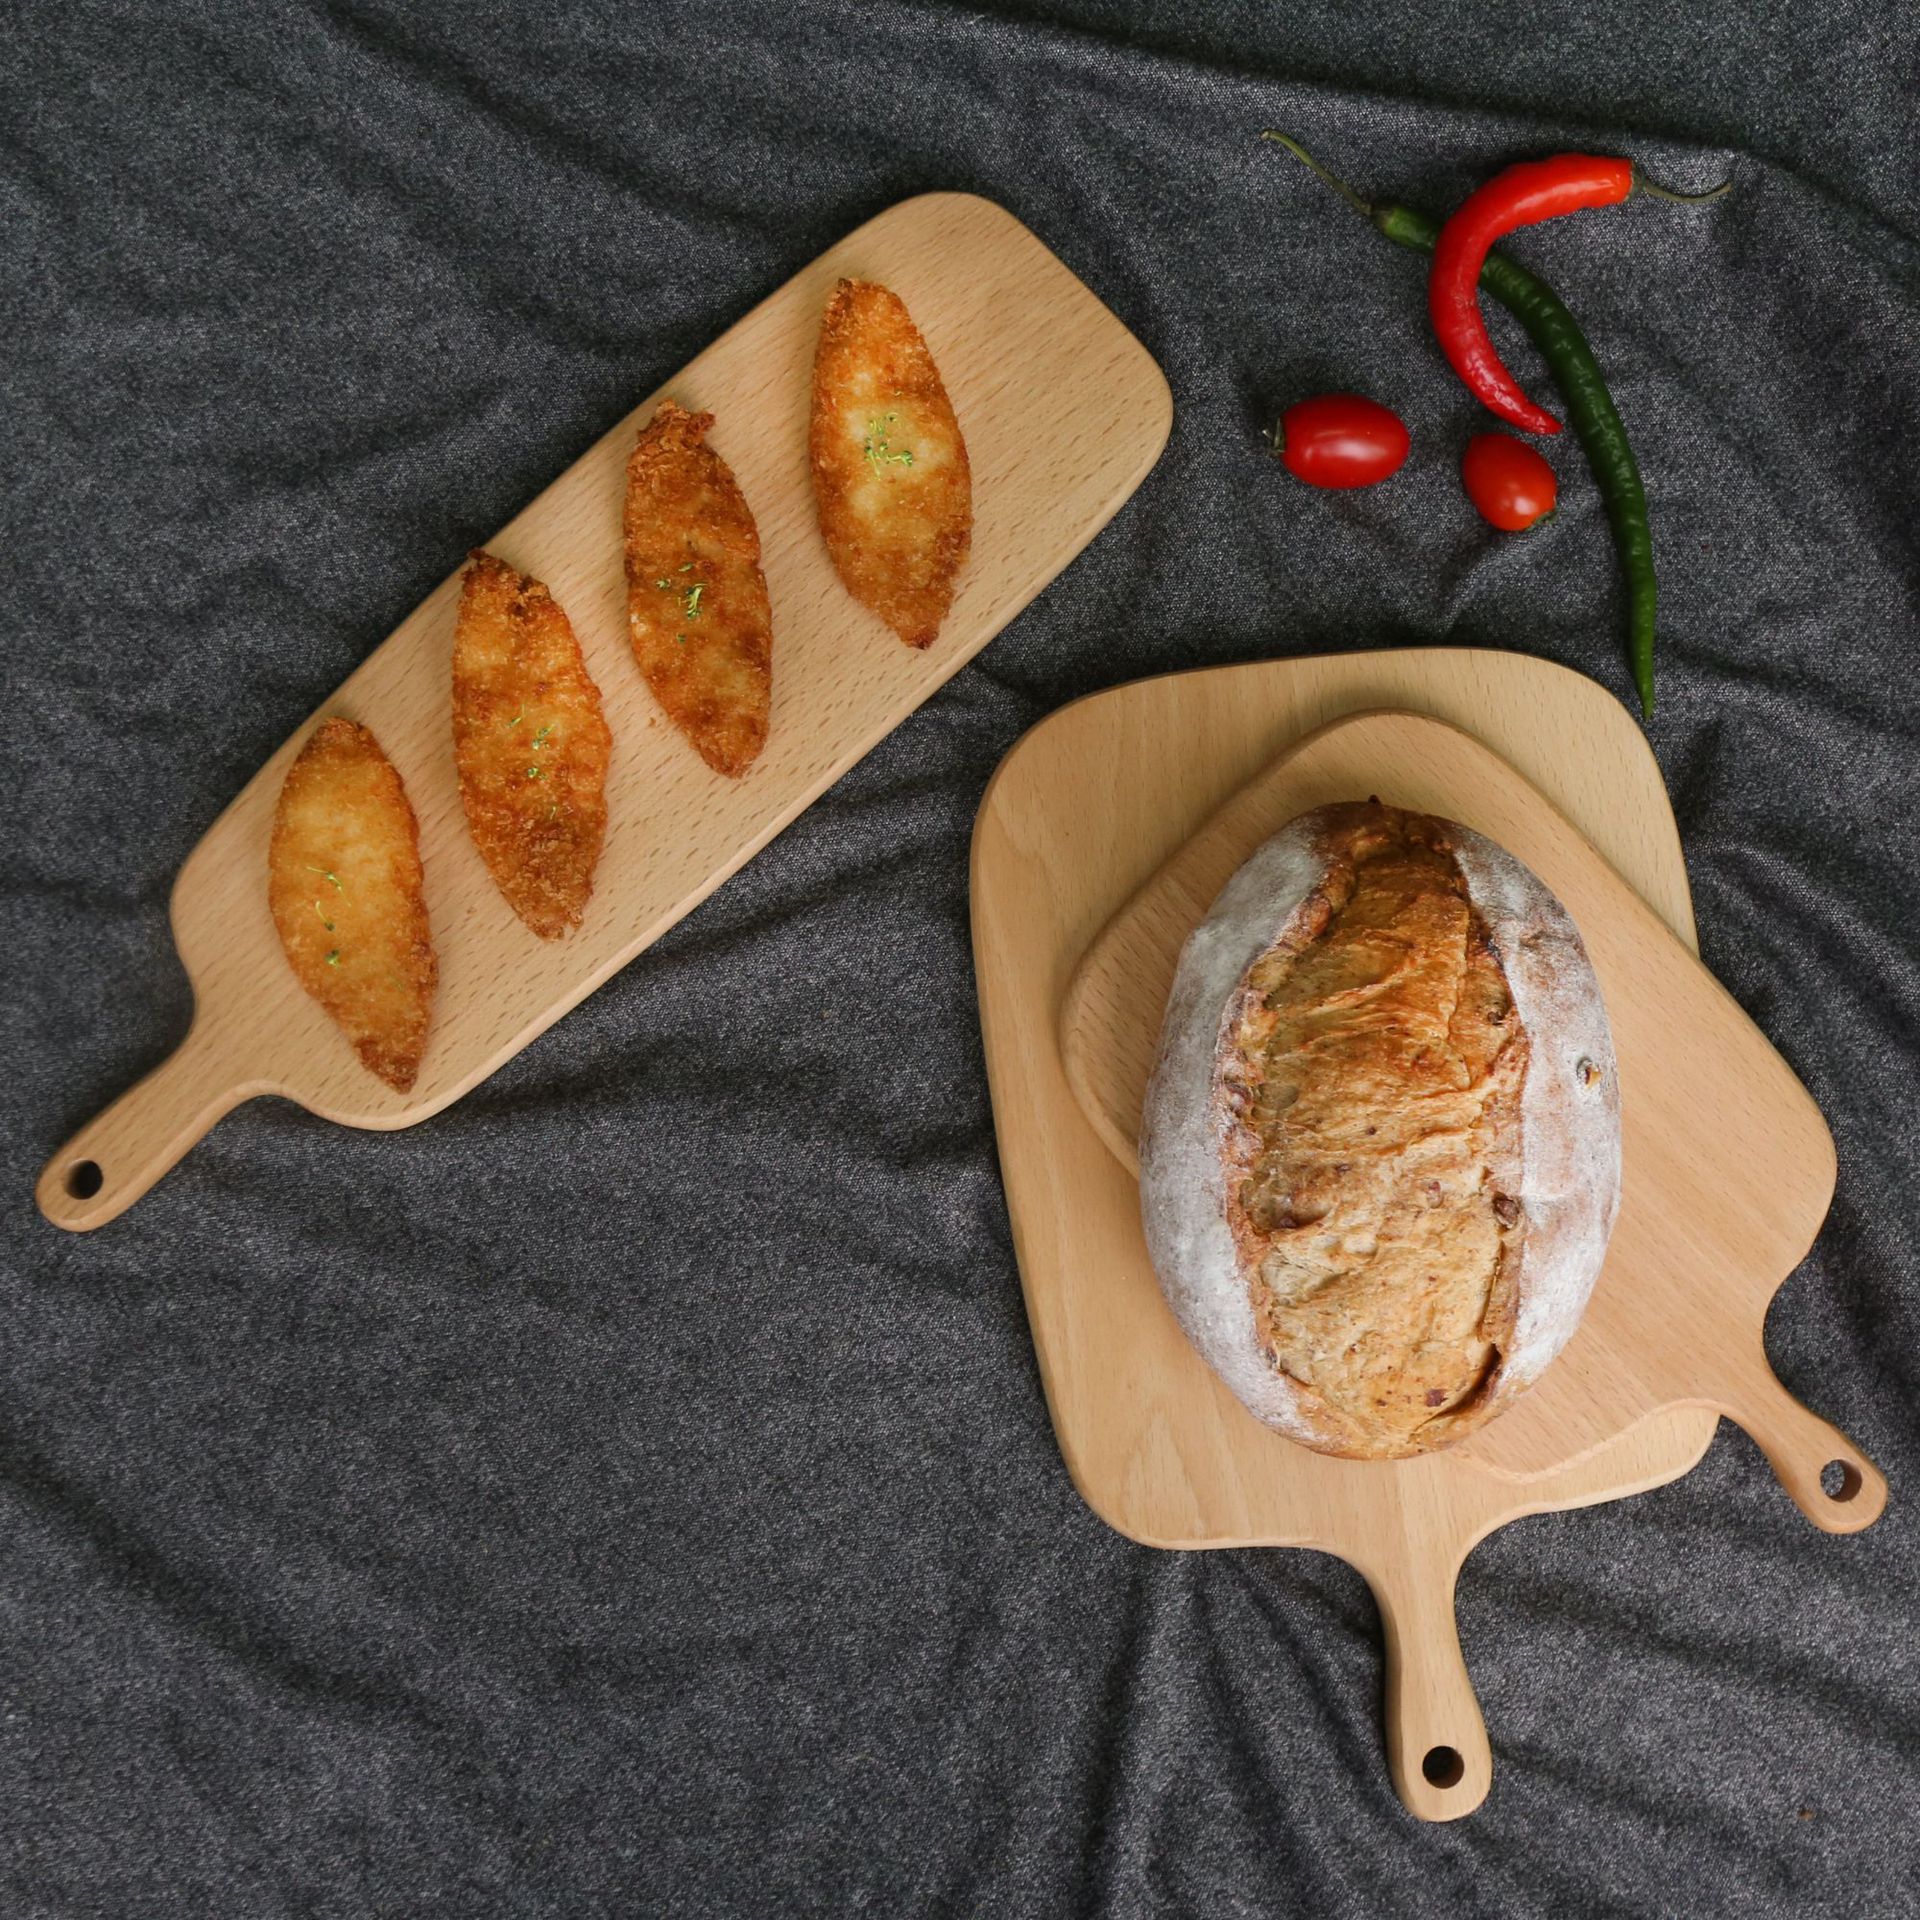 Beech Nordic style bread board cutting vegetables natural wood cutting board cutting board solid wood baking utensils